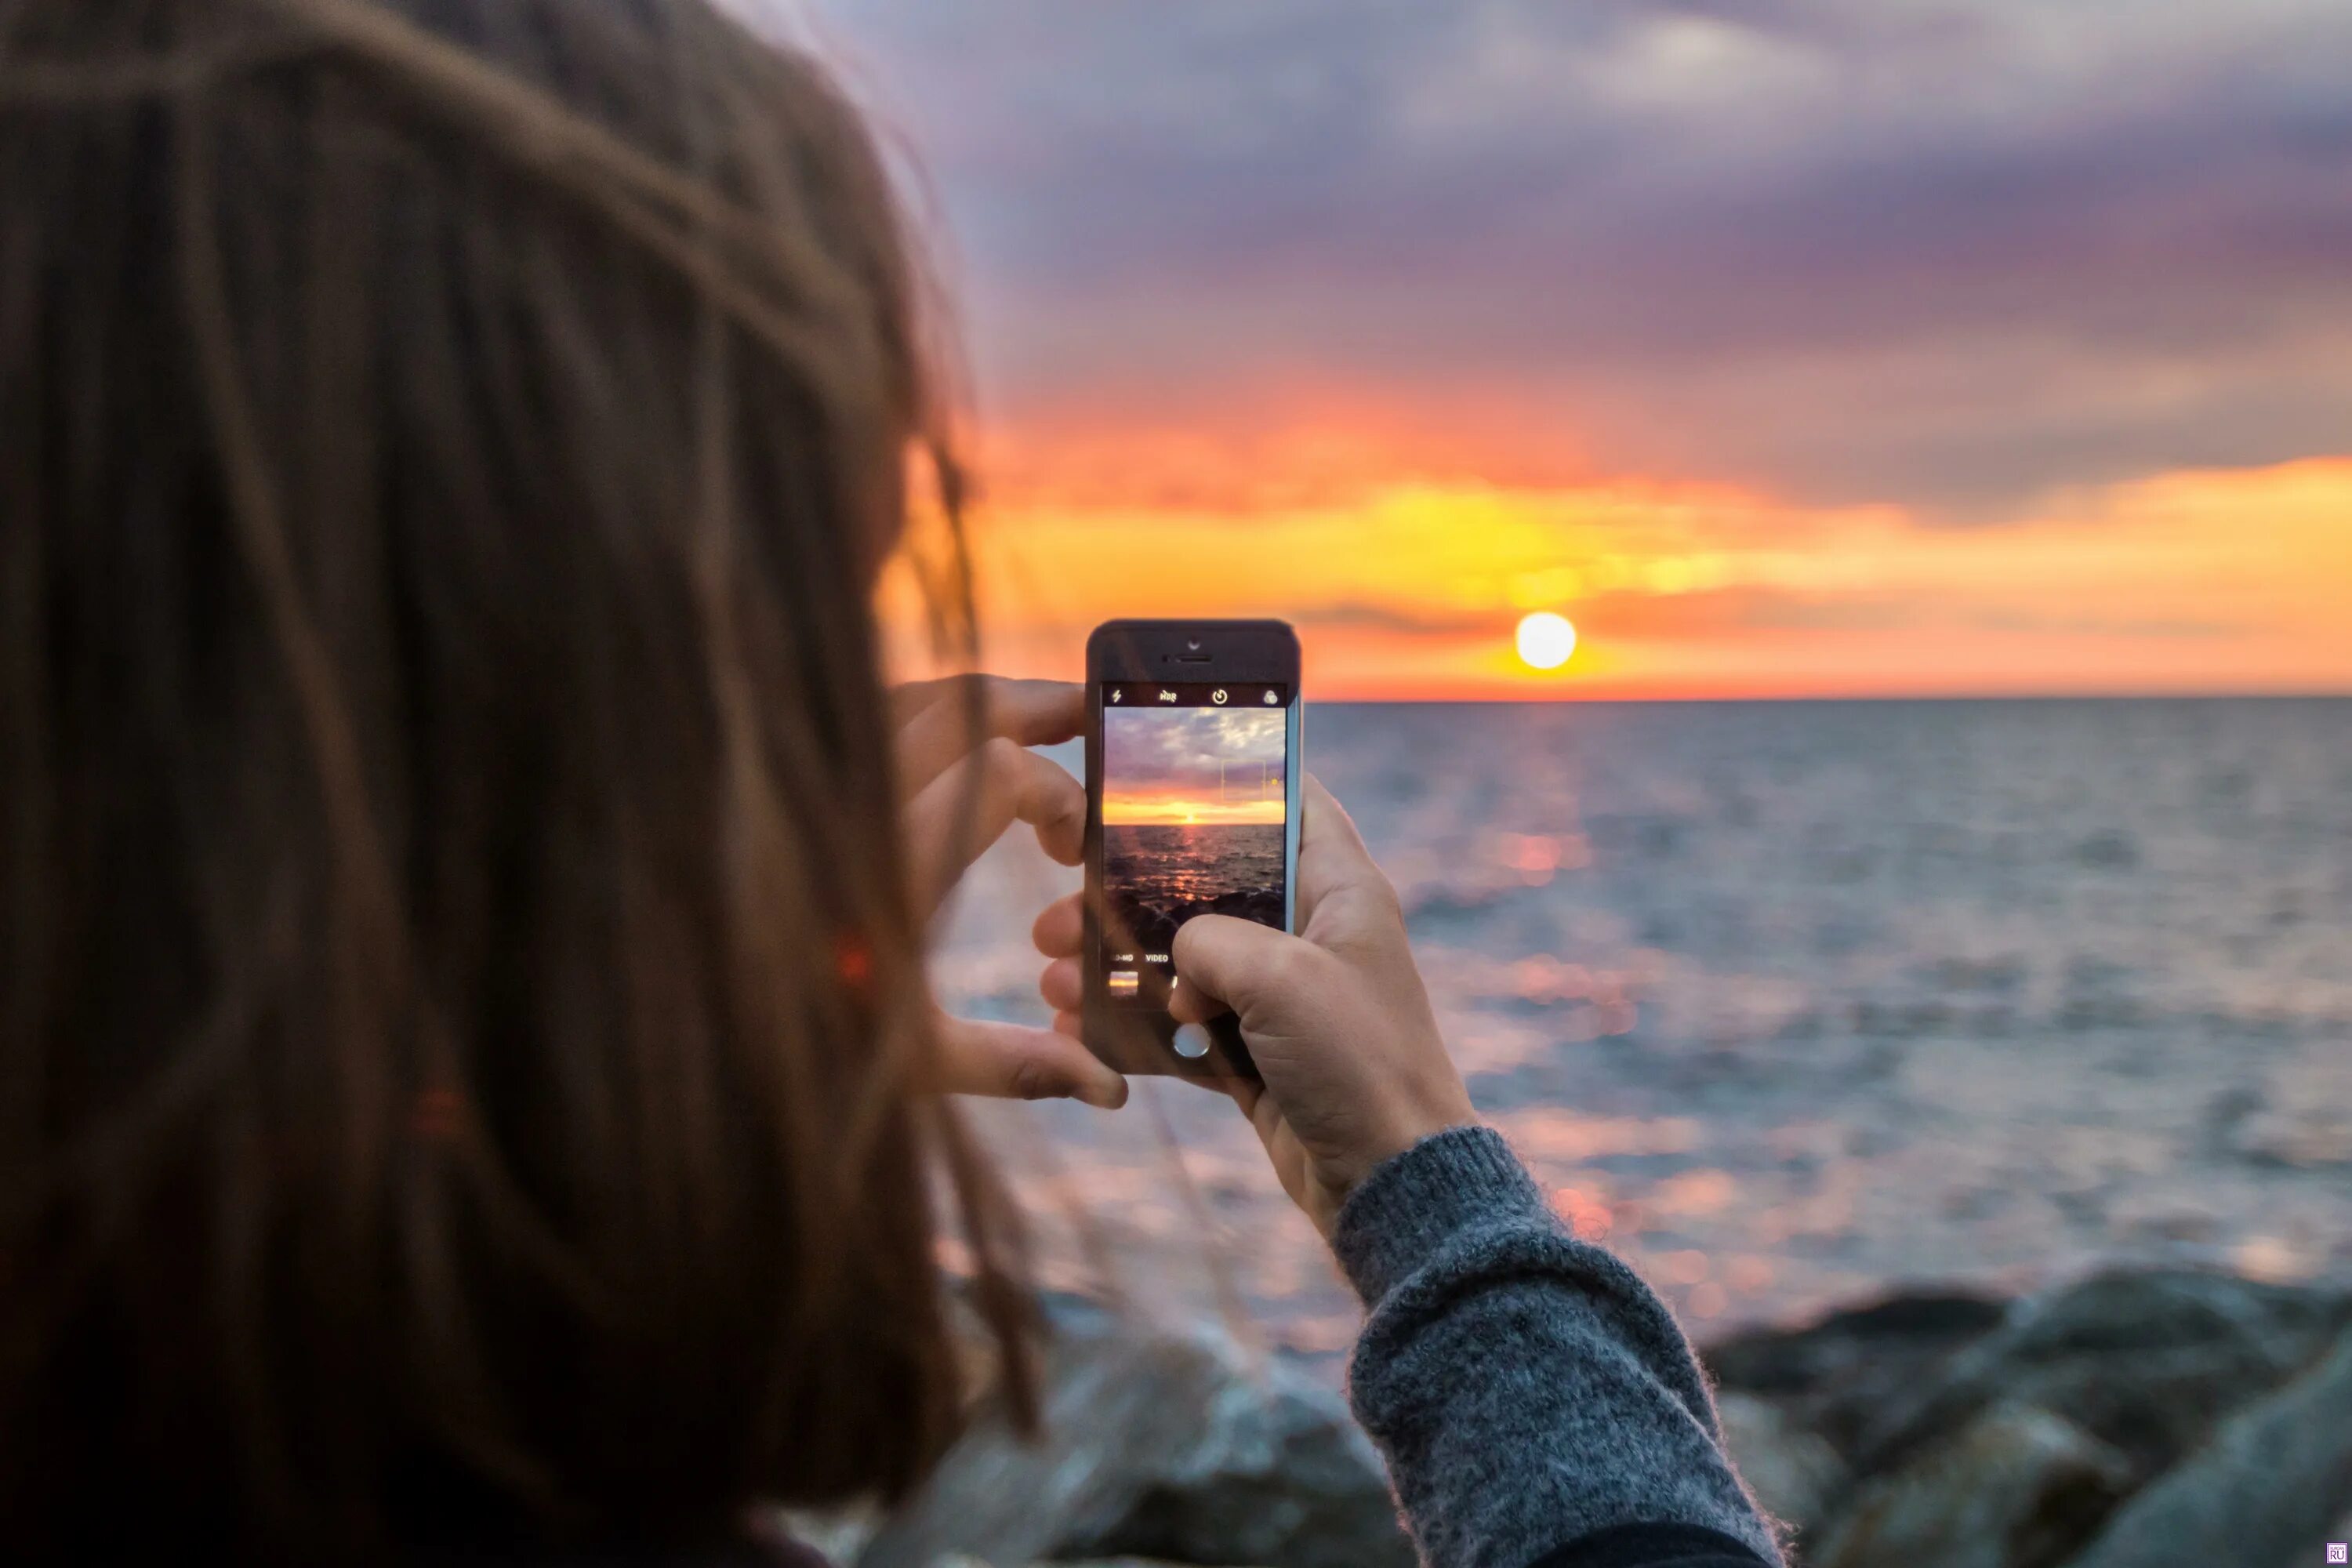 Фотографирует на телефон. Девушка фотографирует на телефон. Фотографирую закат. Девушка фотографирует море. Снято на телефон по кругу